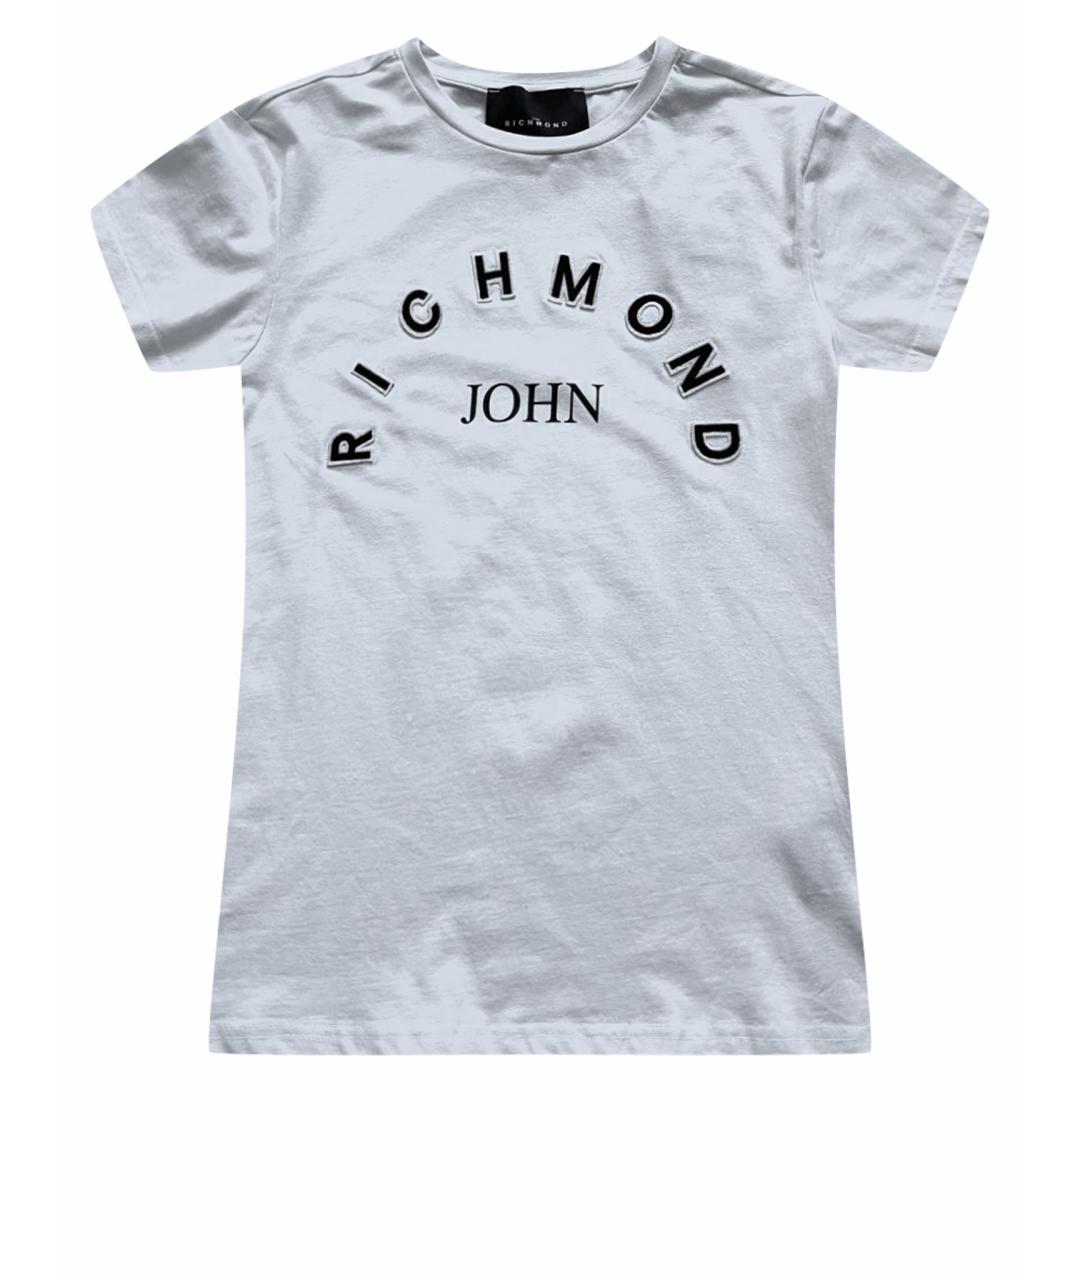 JOHN RICHMOND Белая футболка, фото 1